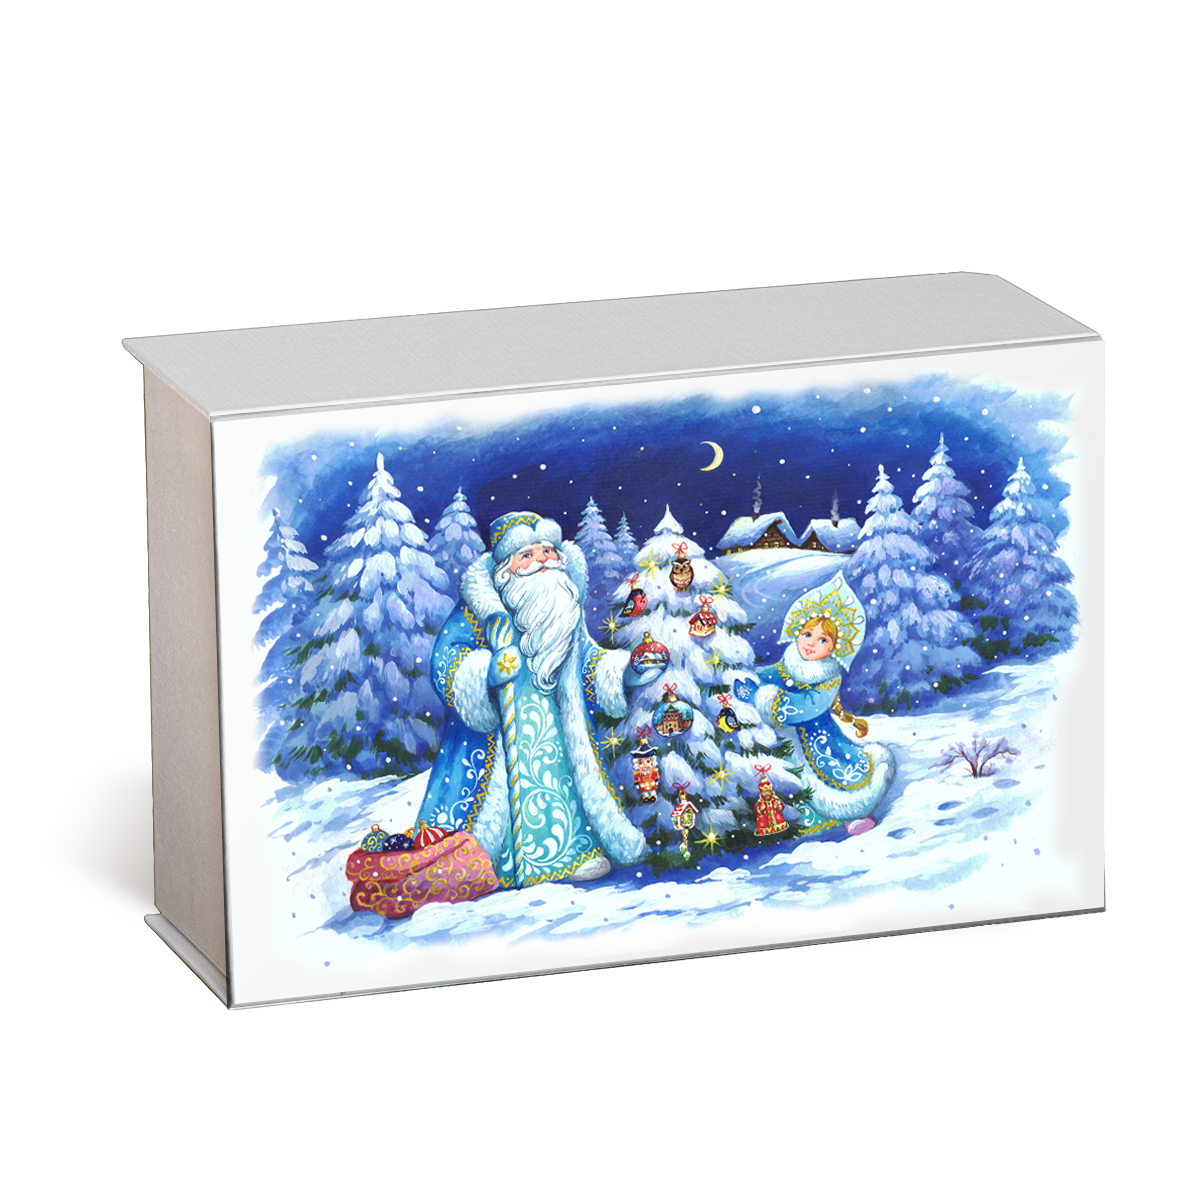 Упаковка картонная на 3 игрушки с новогодней печатью на крышке на магнитах